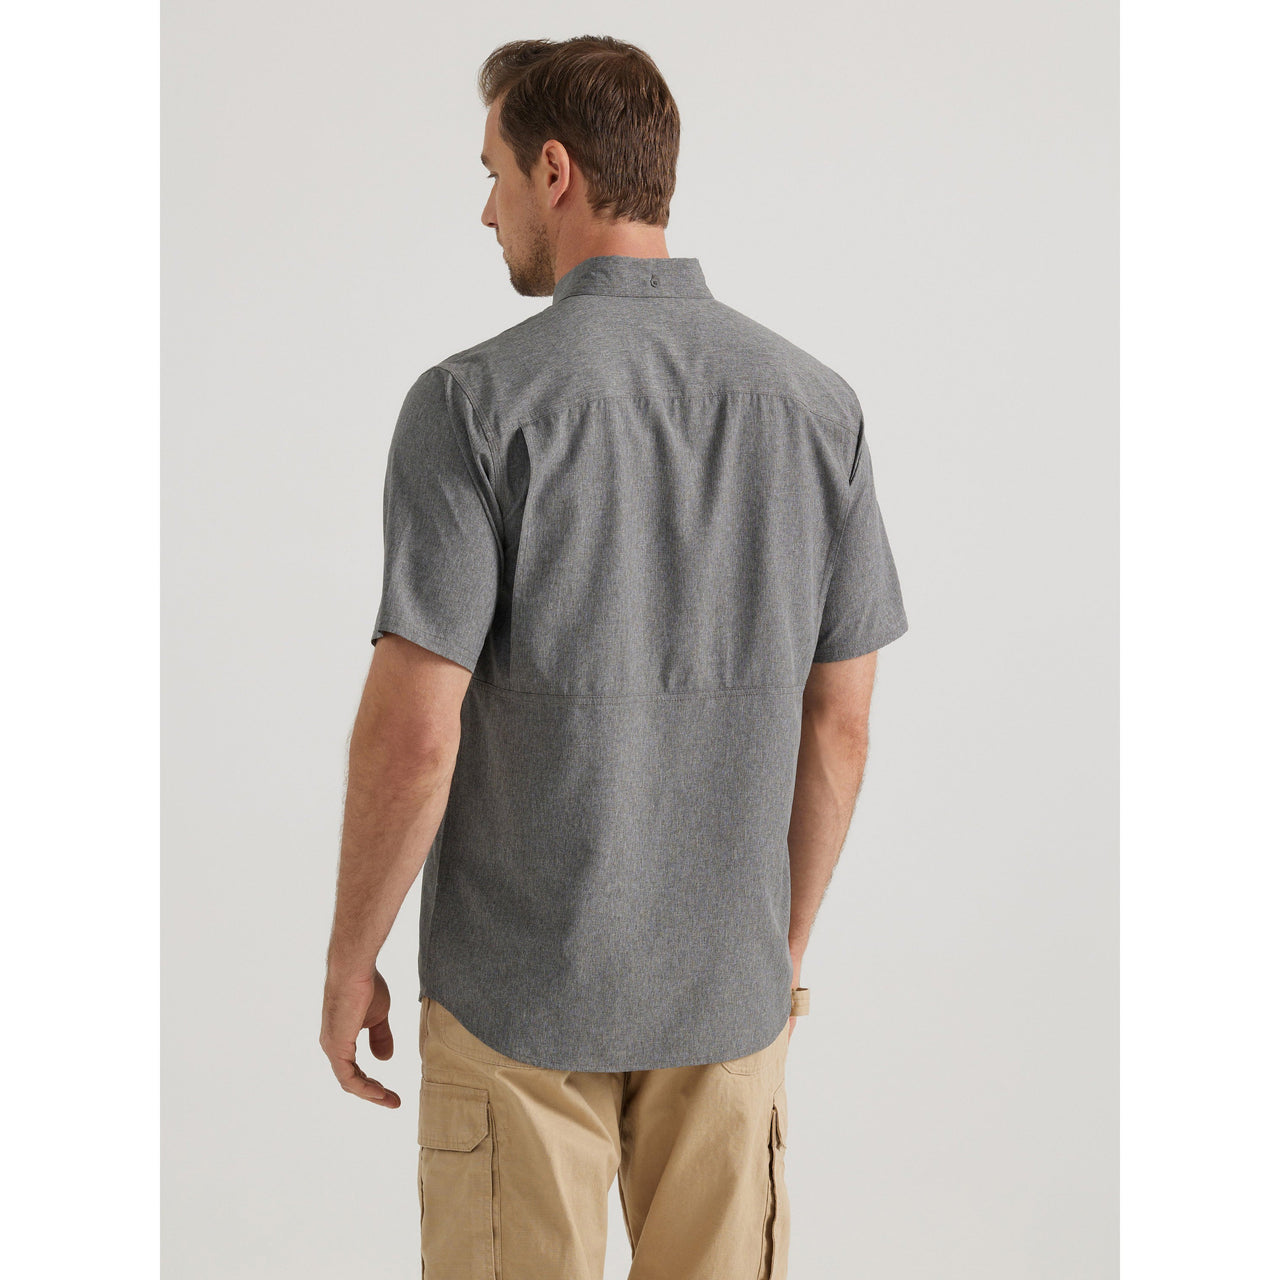 Wrangler Men's Riggs Short Sleeve Work Shirt - Charcoal